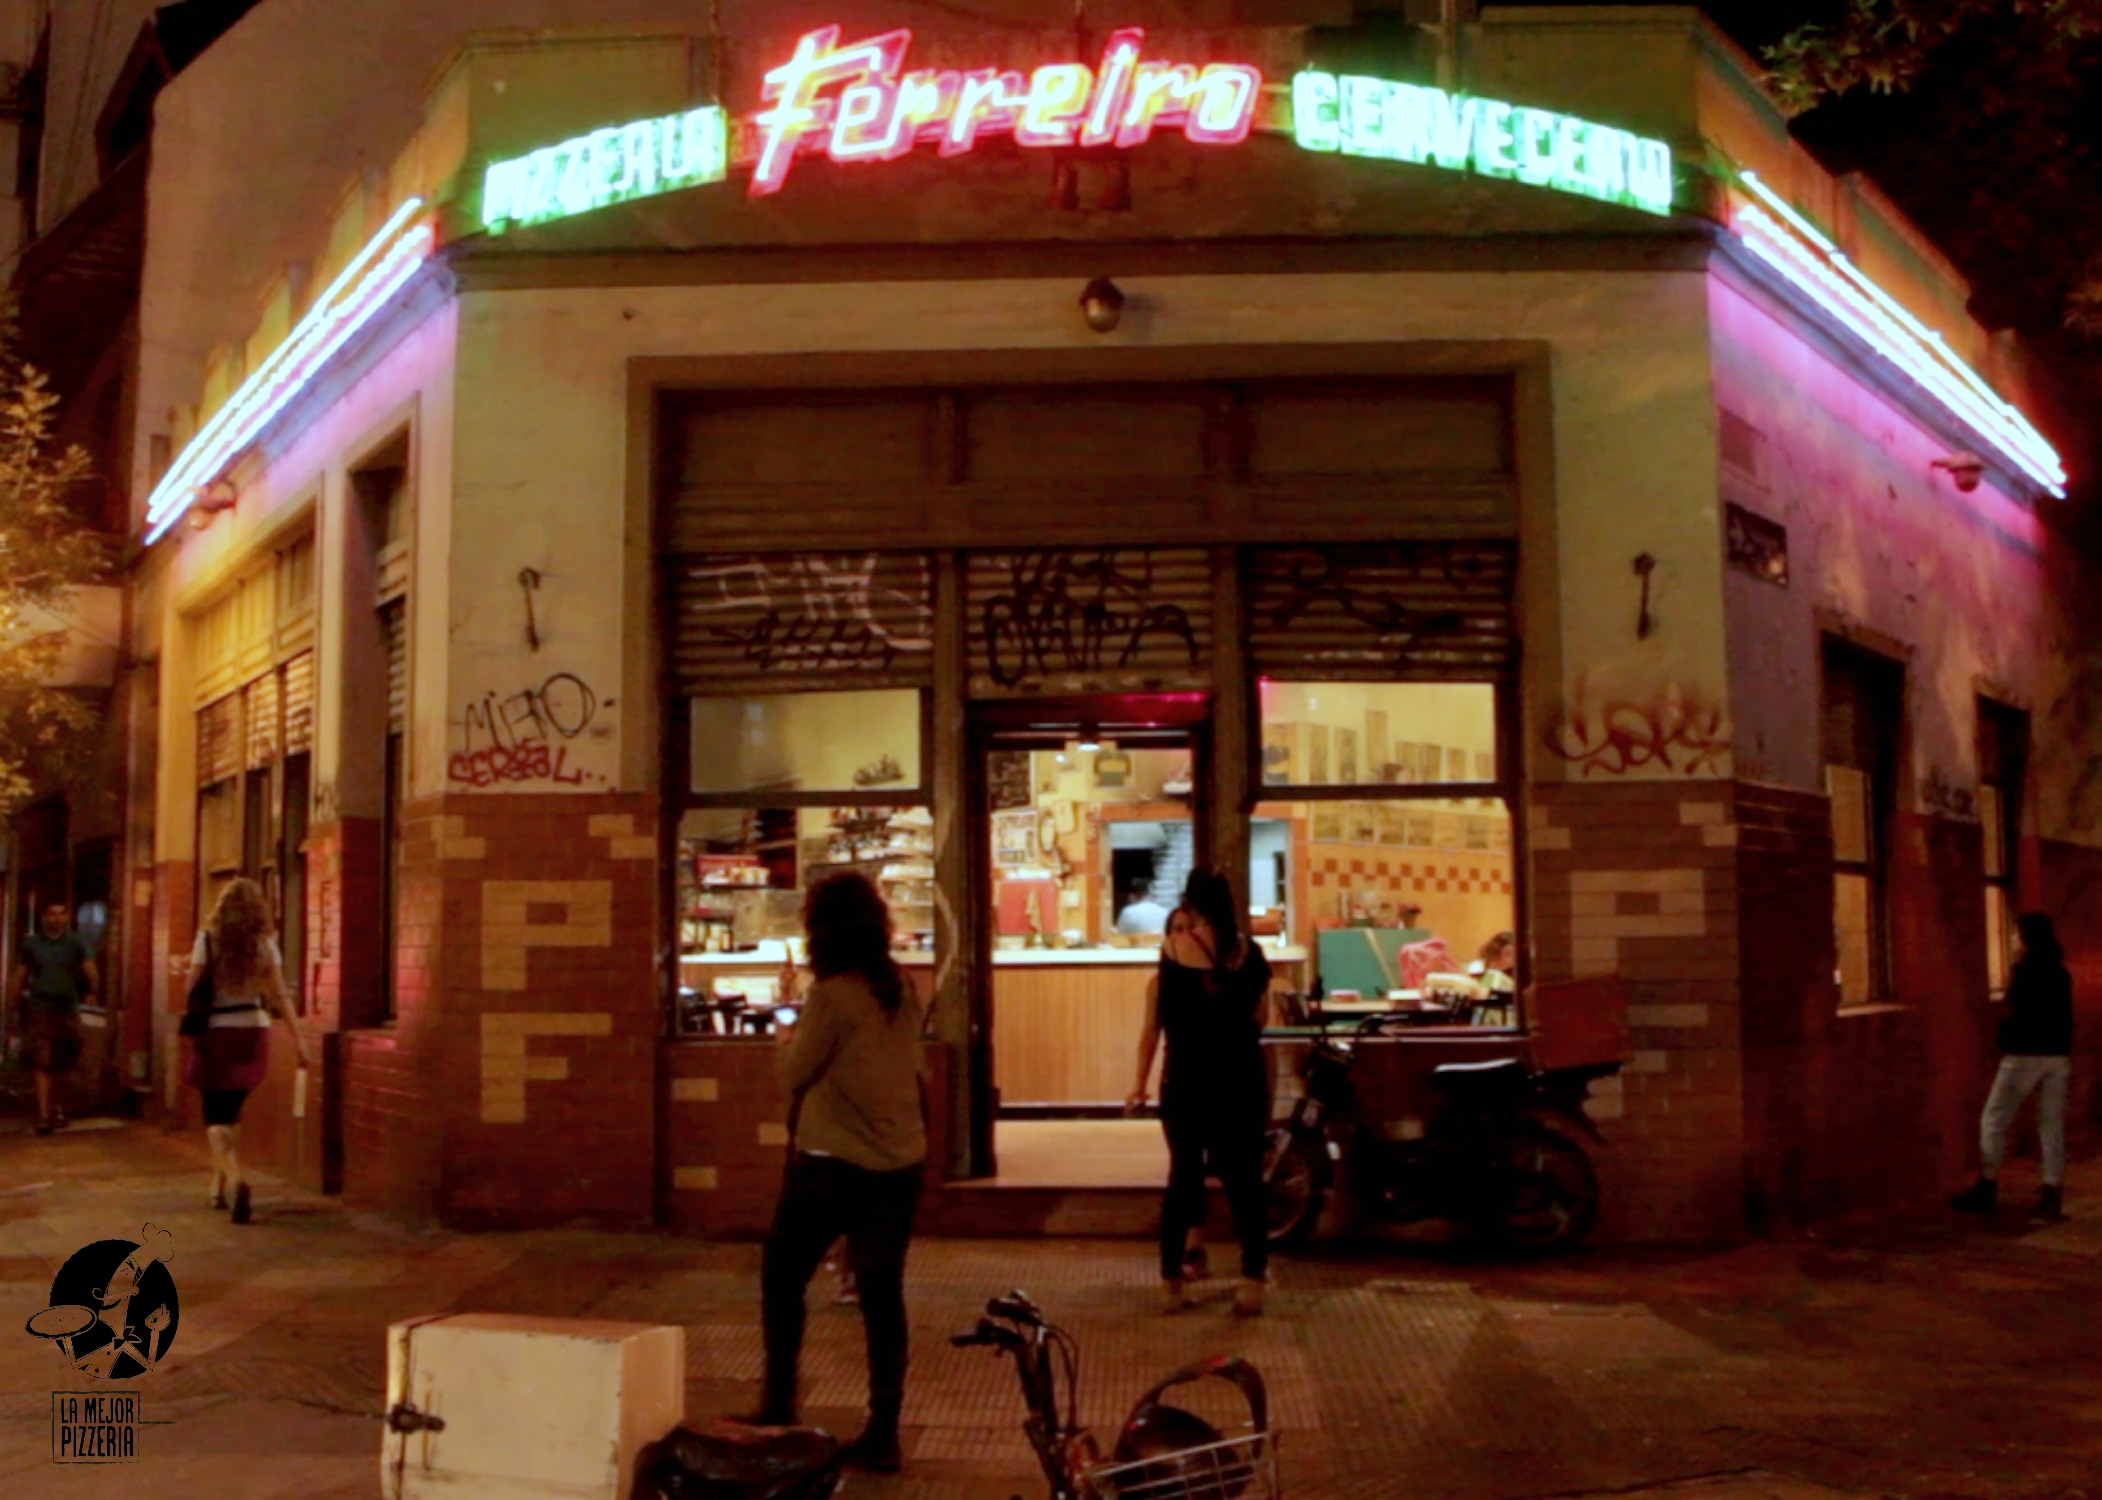 La famosa pizzería Ferreiro - La Mejor Pizzeria